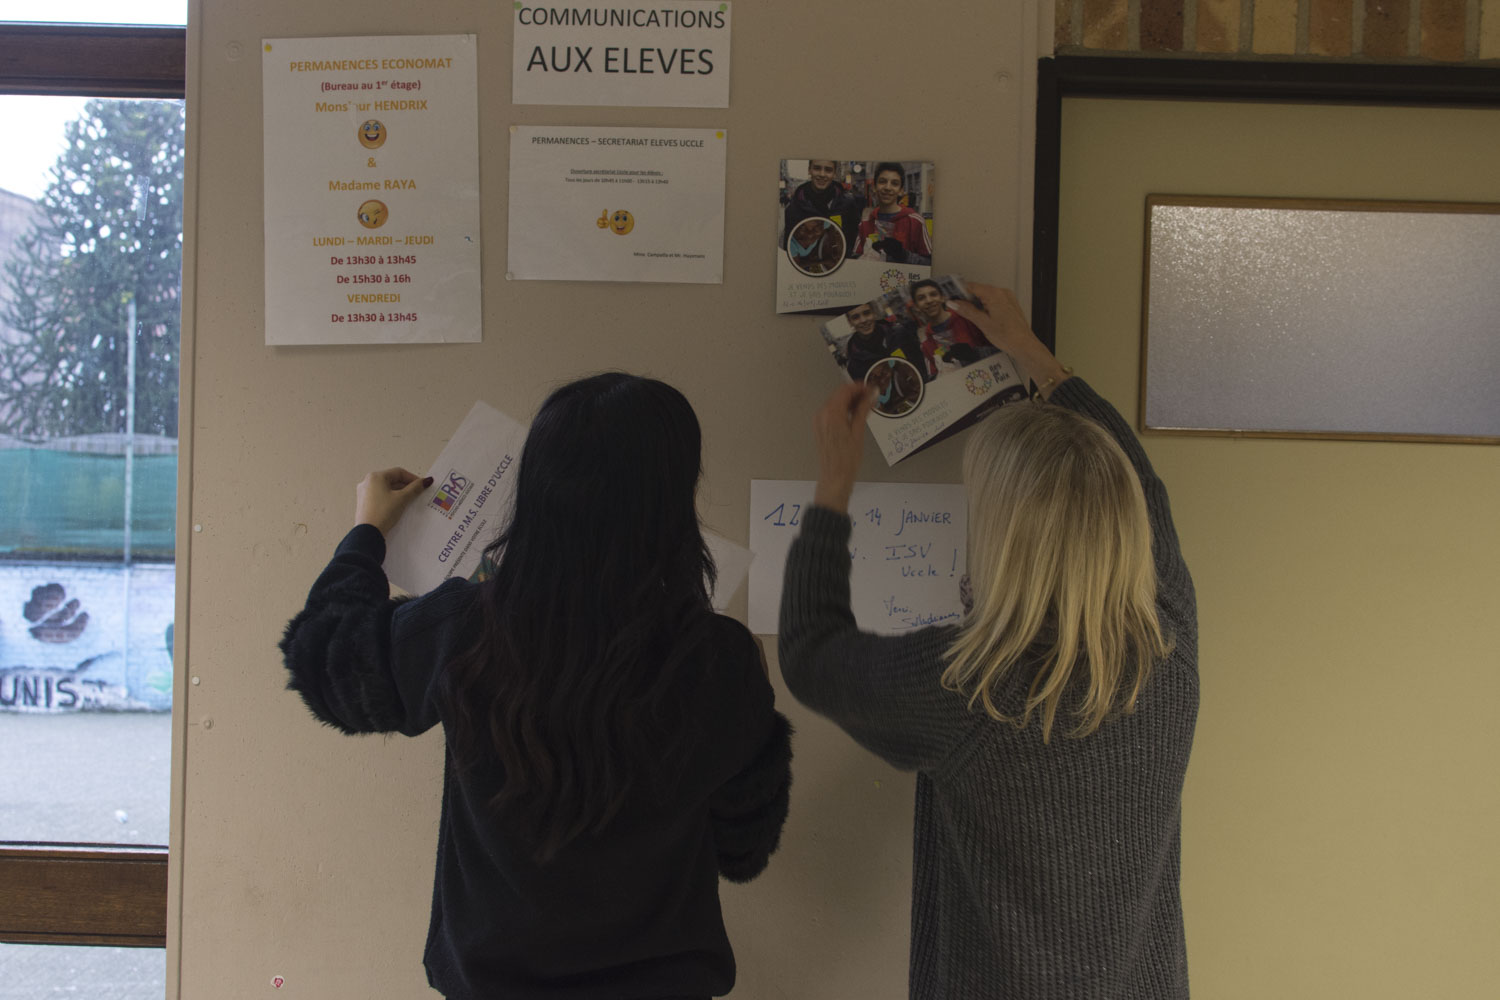 L’éducatrice (à droite) guide les élèves pour décrocher et accrocher les affiches